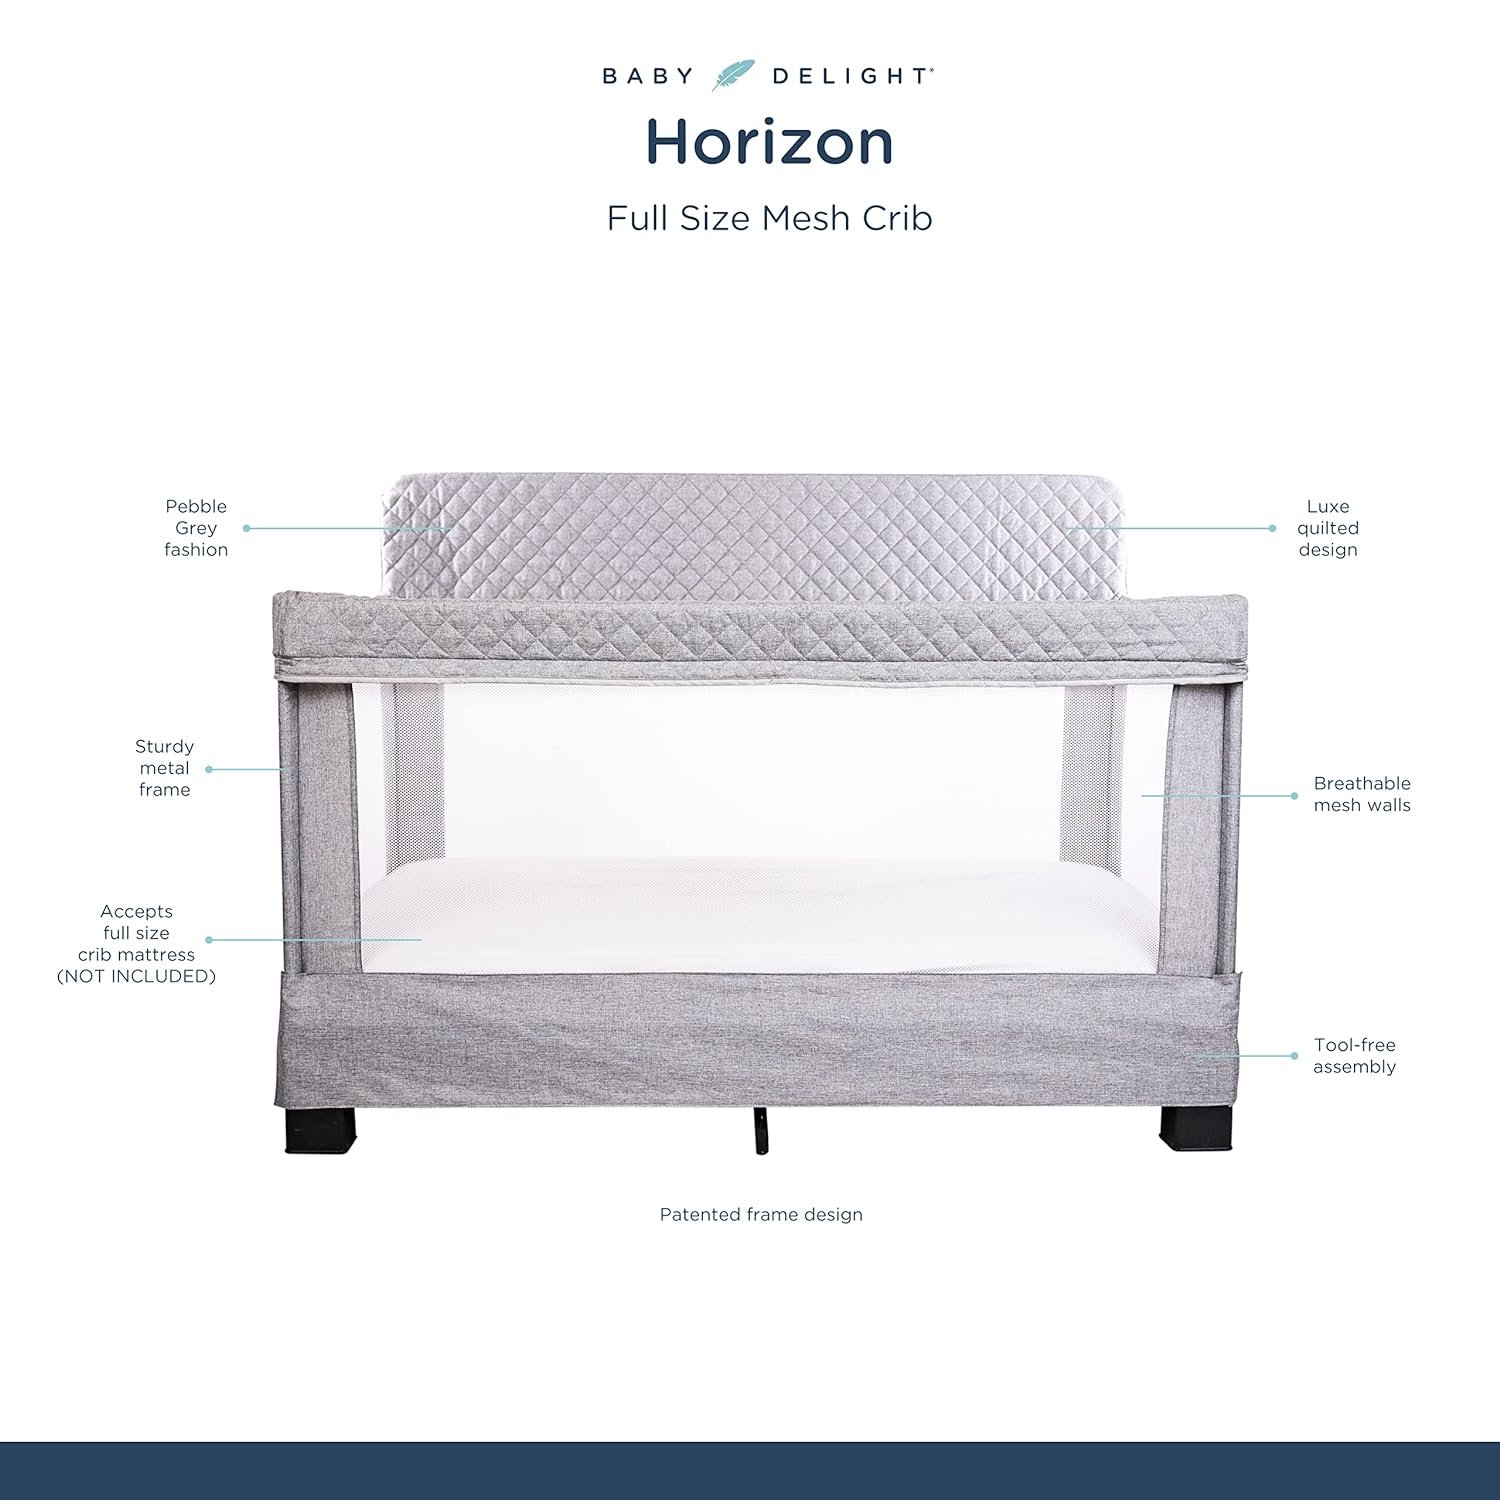 Baby Delight Horizon Crib Review